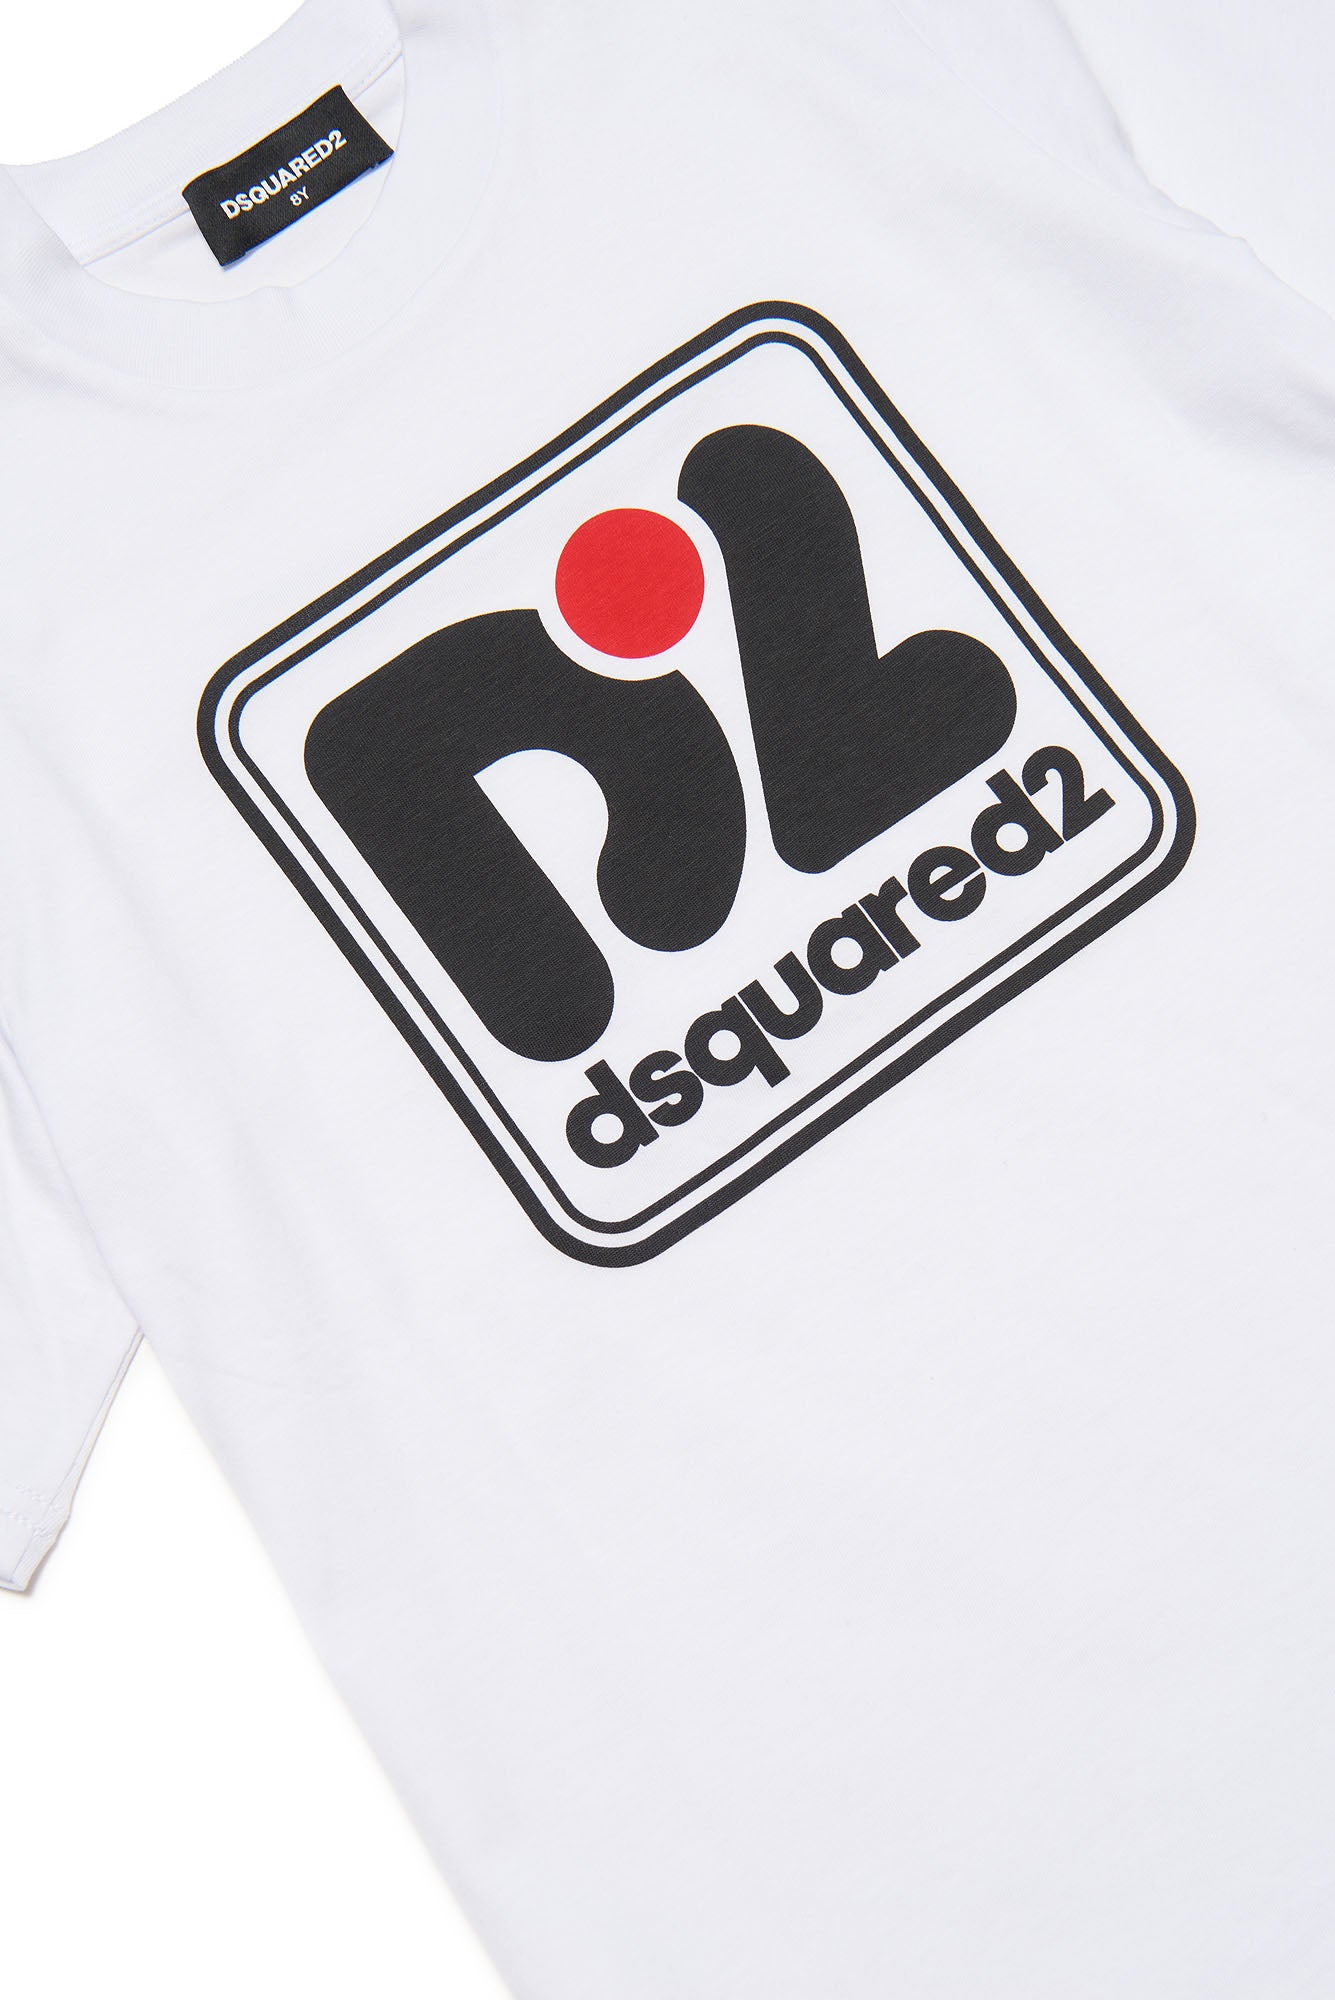 Dsquared2 Unisex Child T-shirt DQ1977 D004G White